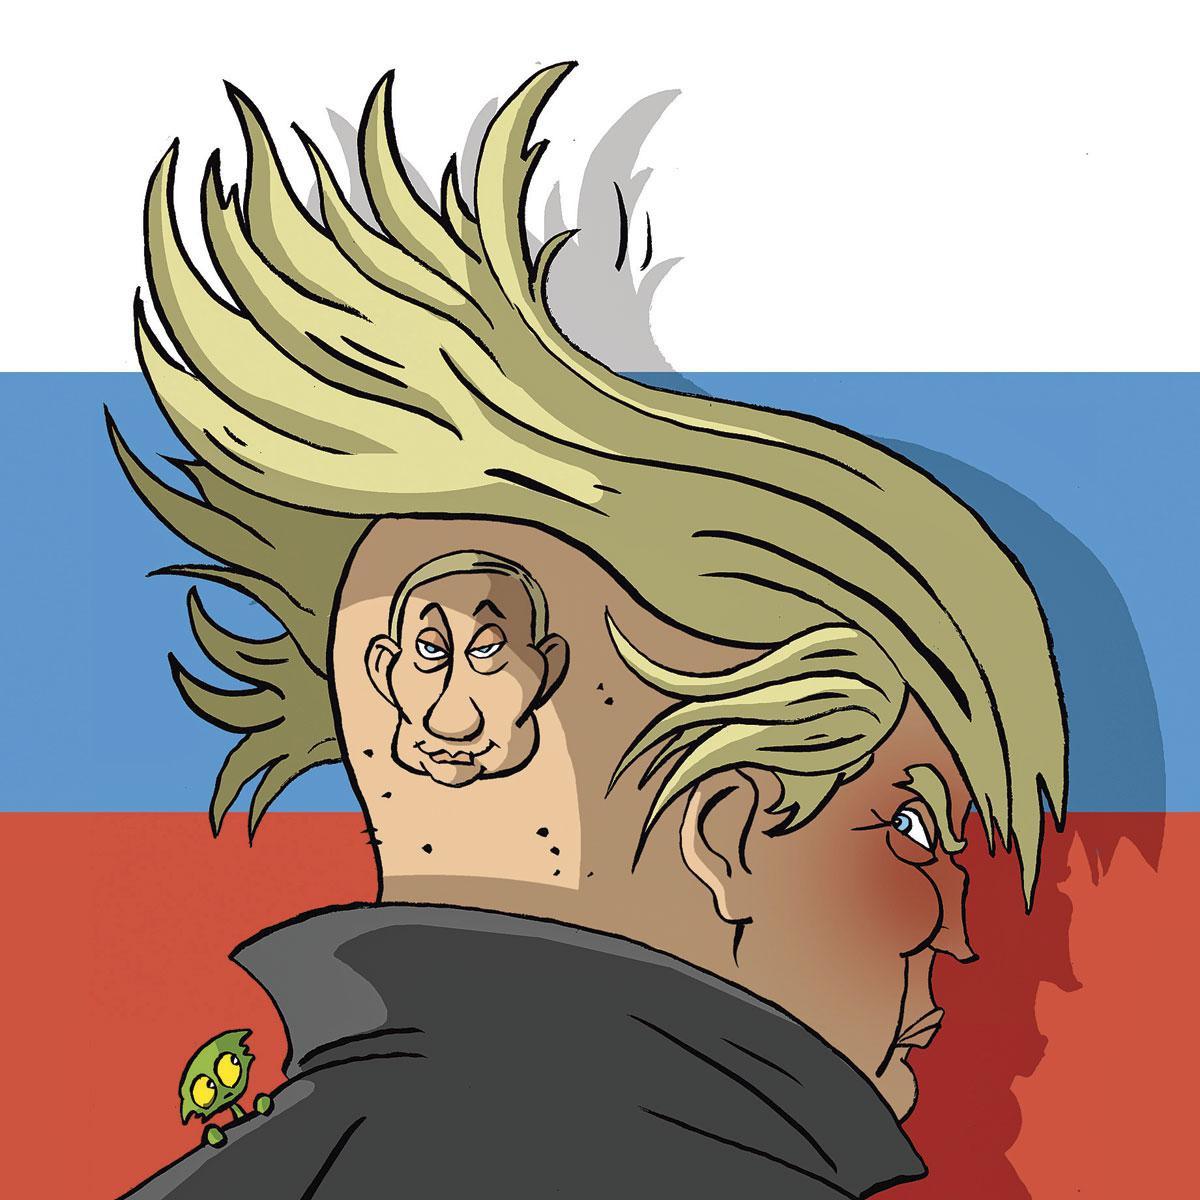 22 février 2018 - La Russie est accusée d'avoir interféré dans les élections de 2016 afin de faire élire Donald Trump.